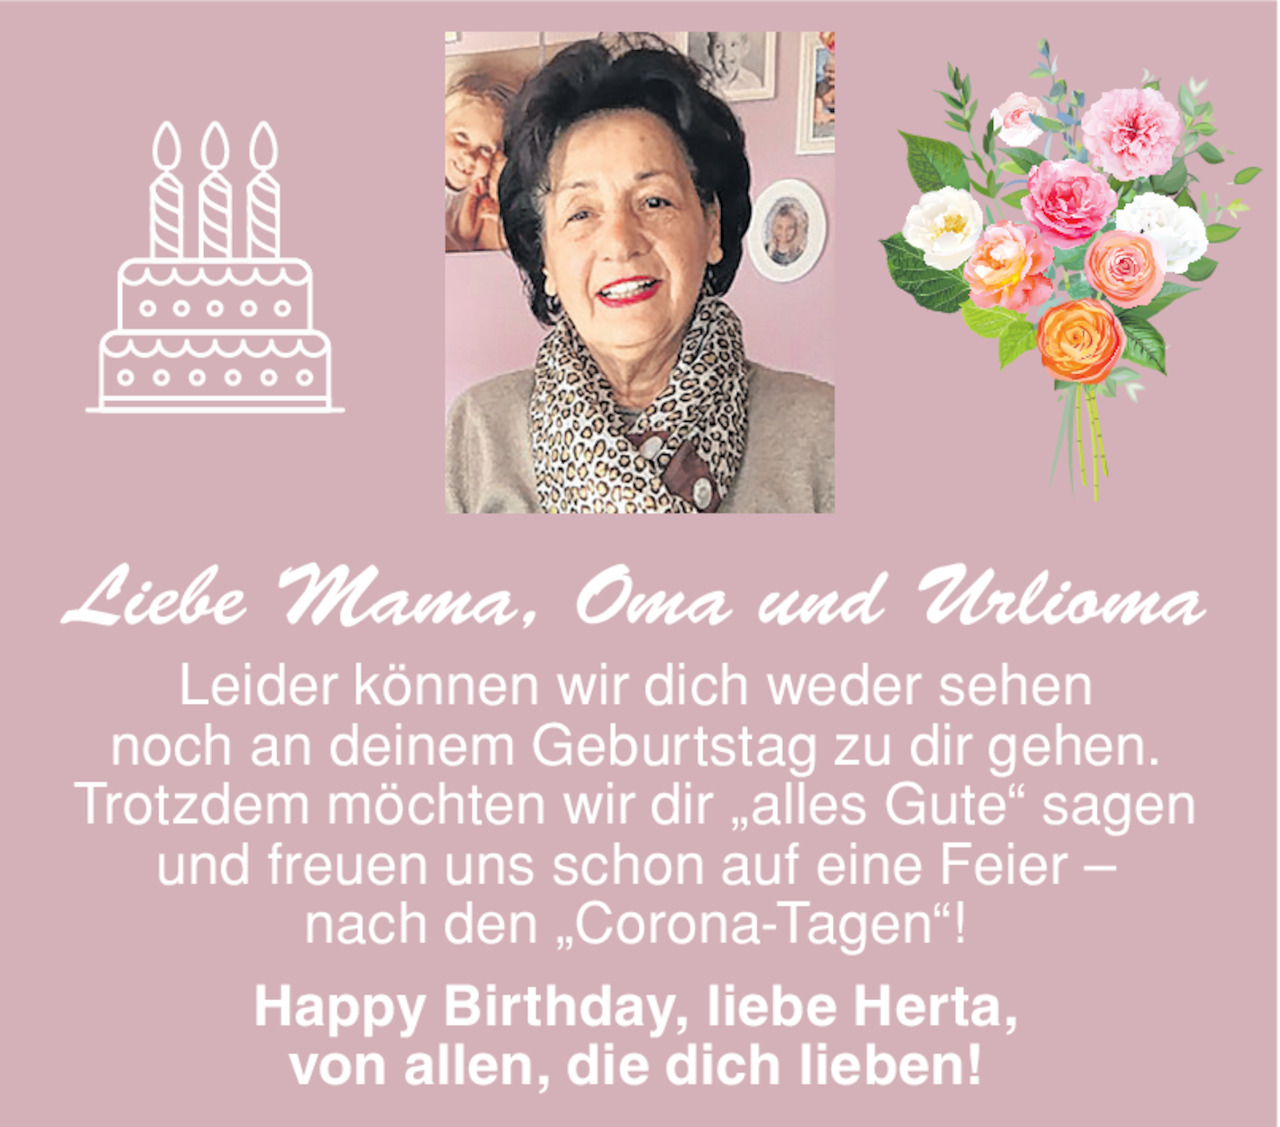 Herzlichkeit Von Liebe Mama Vom 21 04 Tiroler eszeitung Online